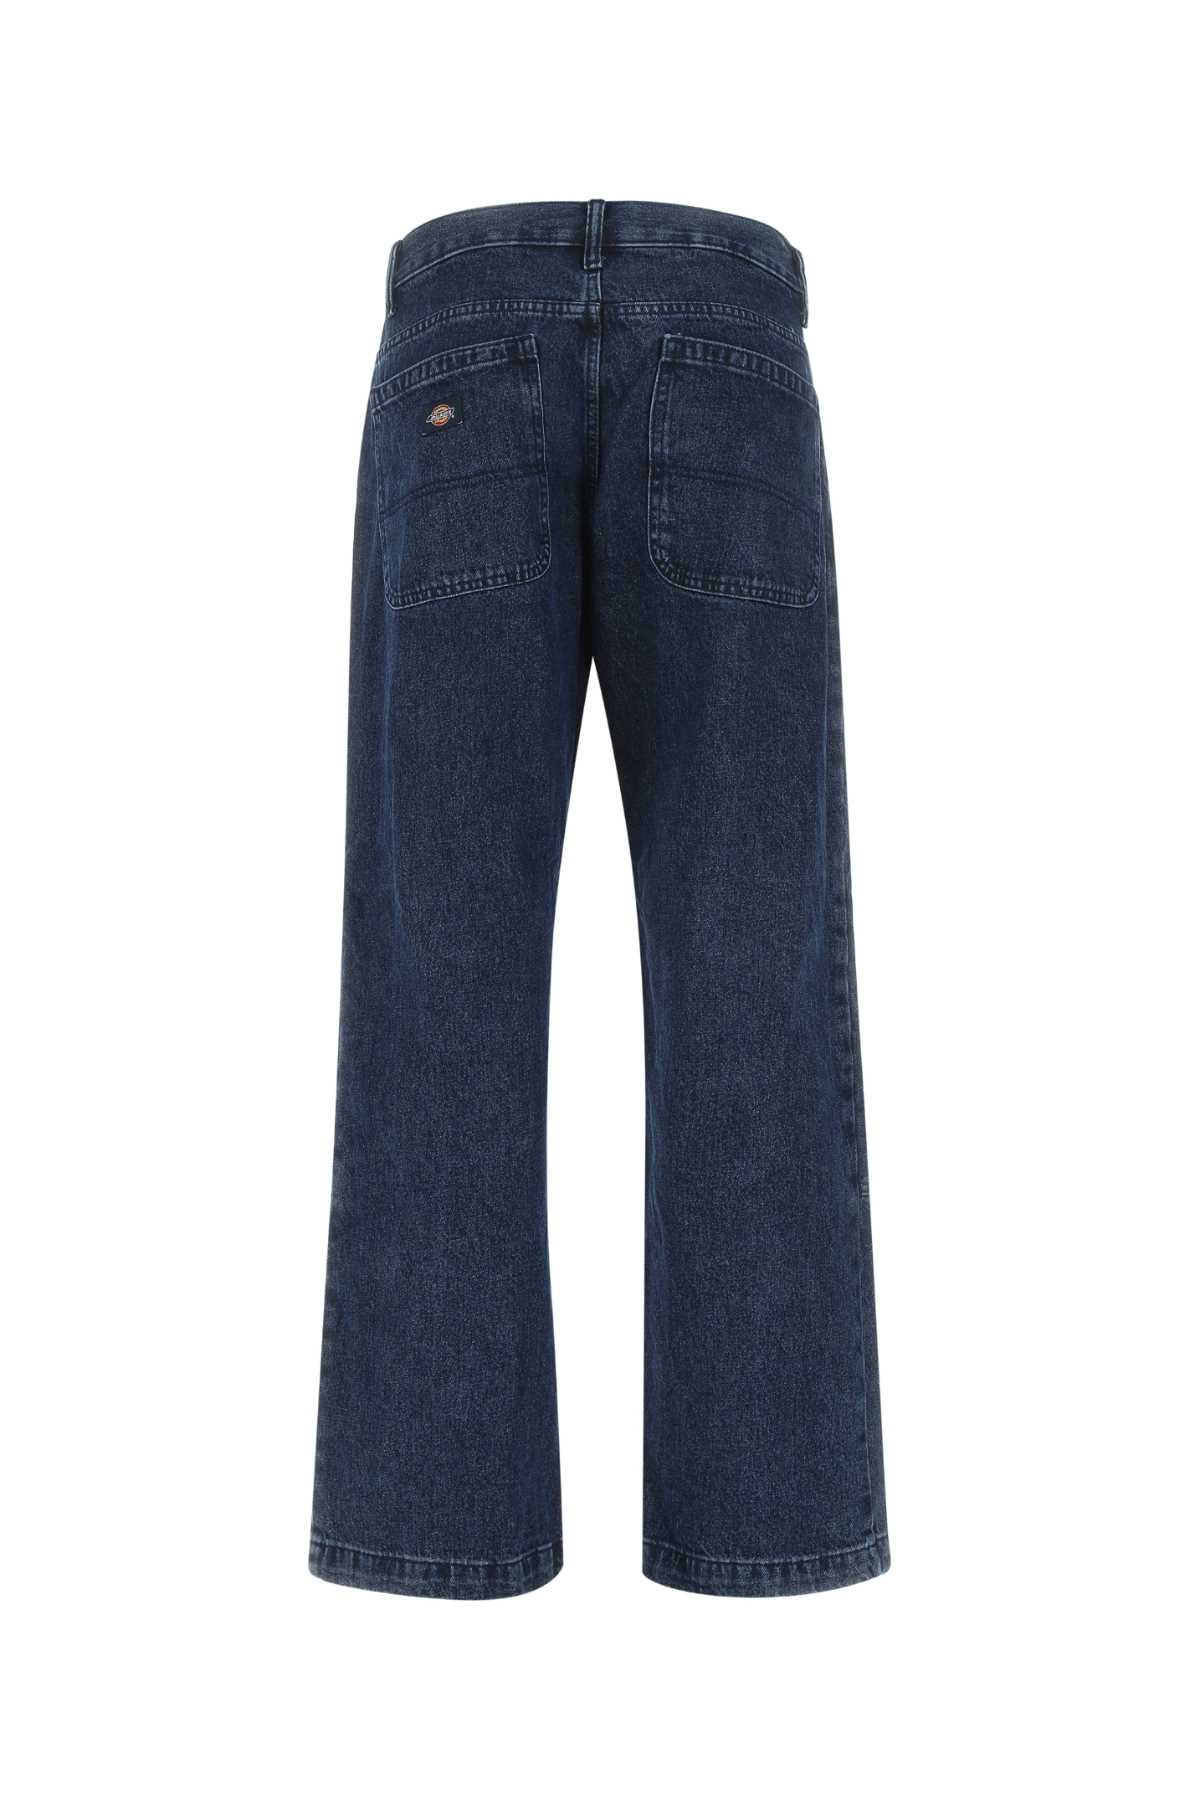 Dickies Blue Denim Jeans In Ind1